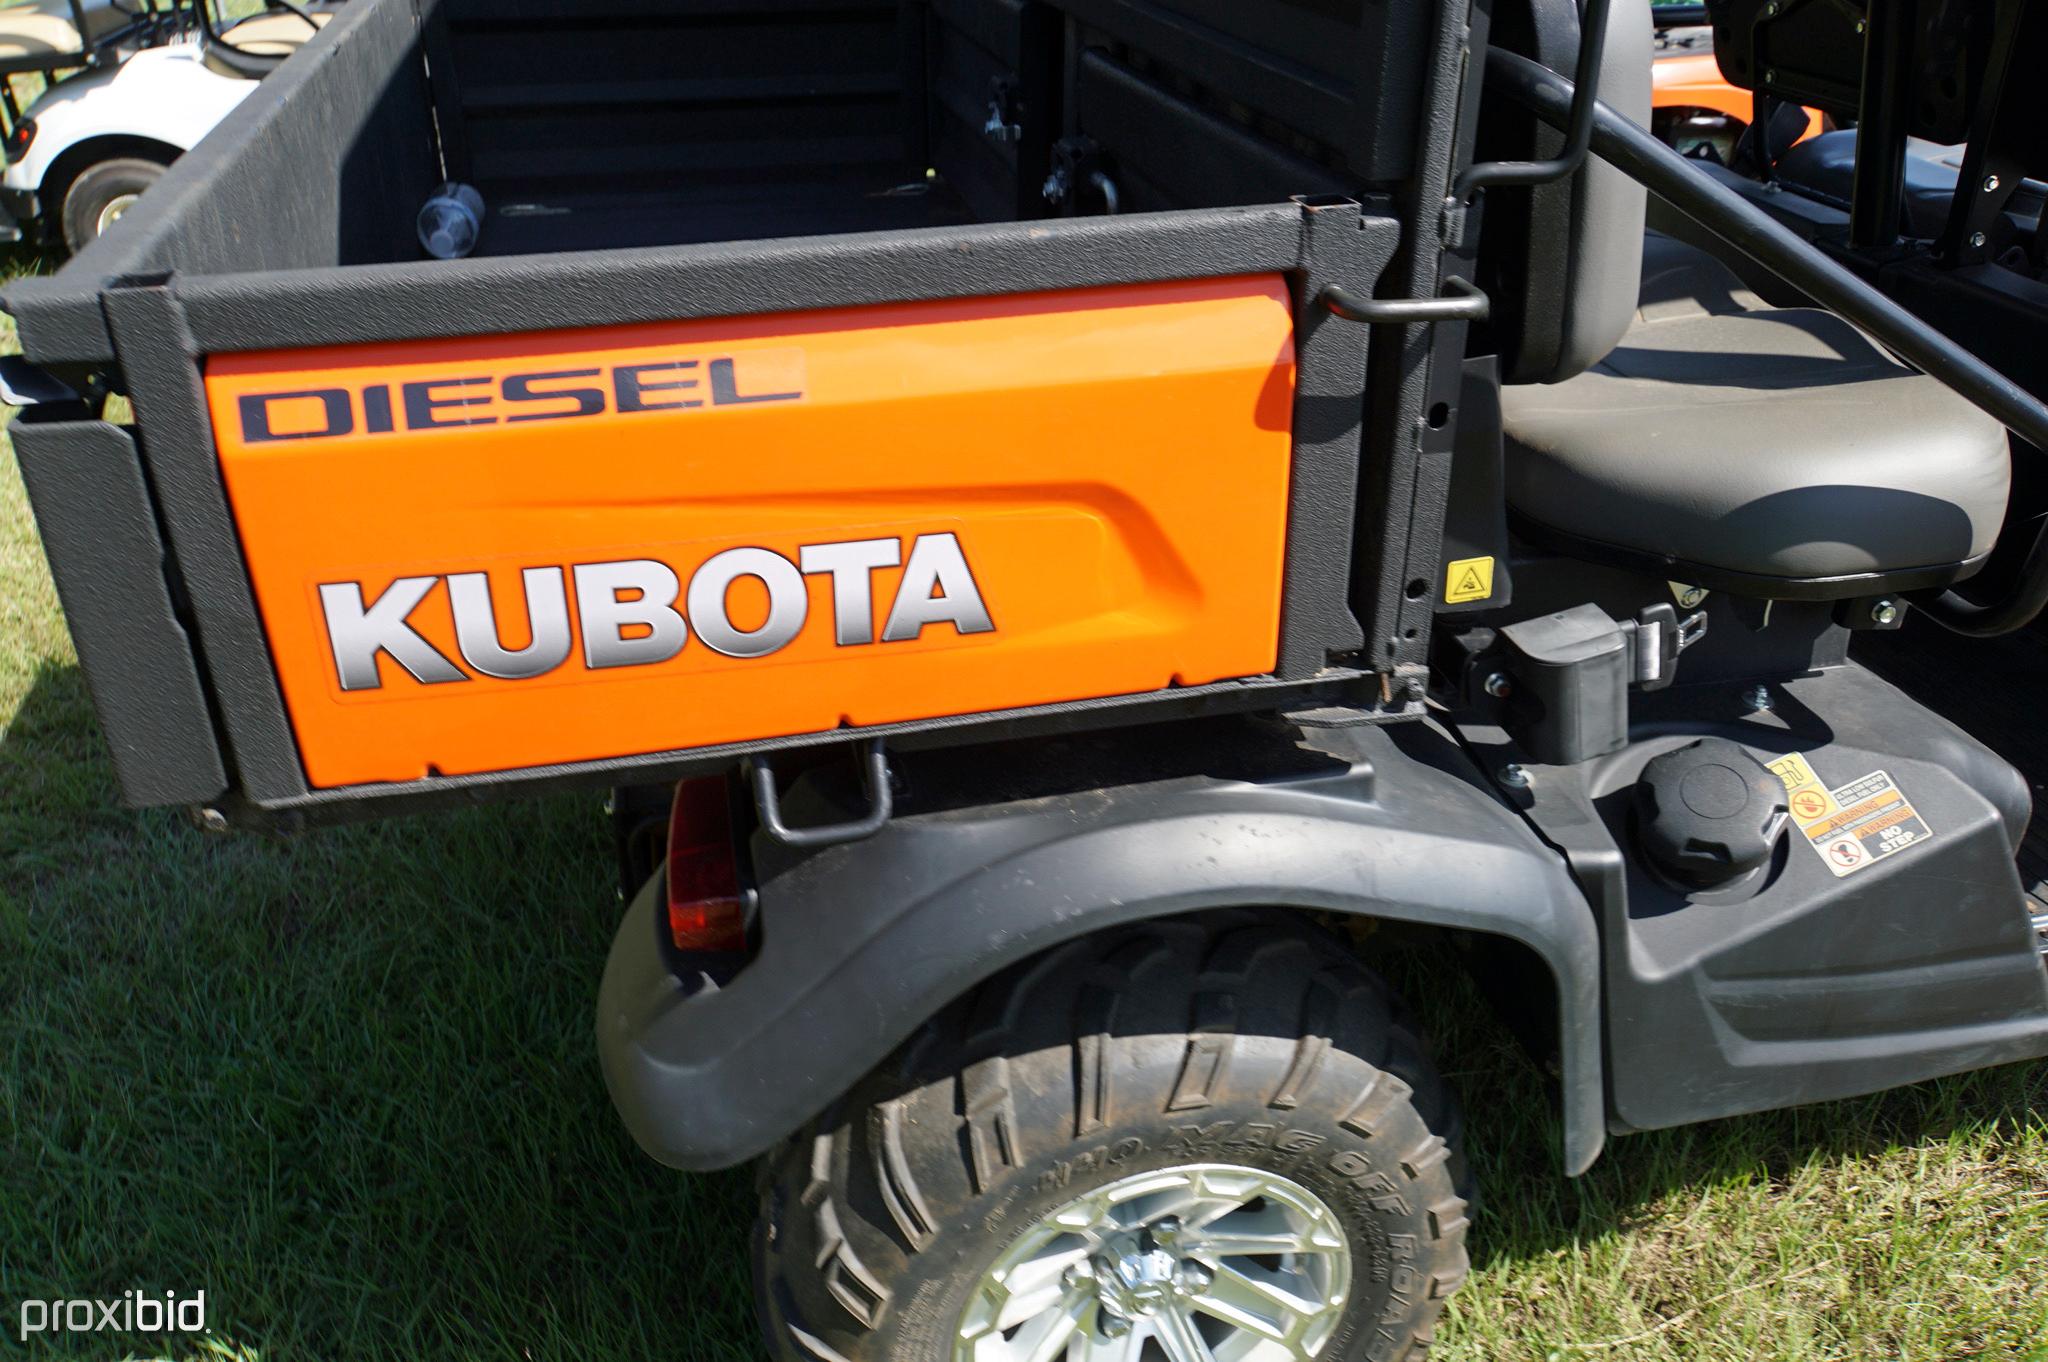 2019 Kubota RTVX-1140 4WD Utility Vehicle, s/n A5KD2GDBEKG032334 (No Title